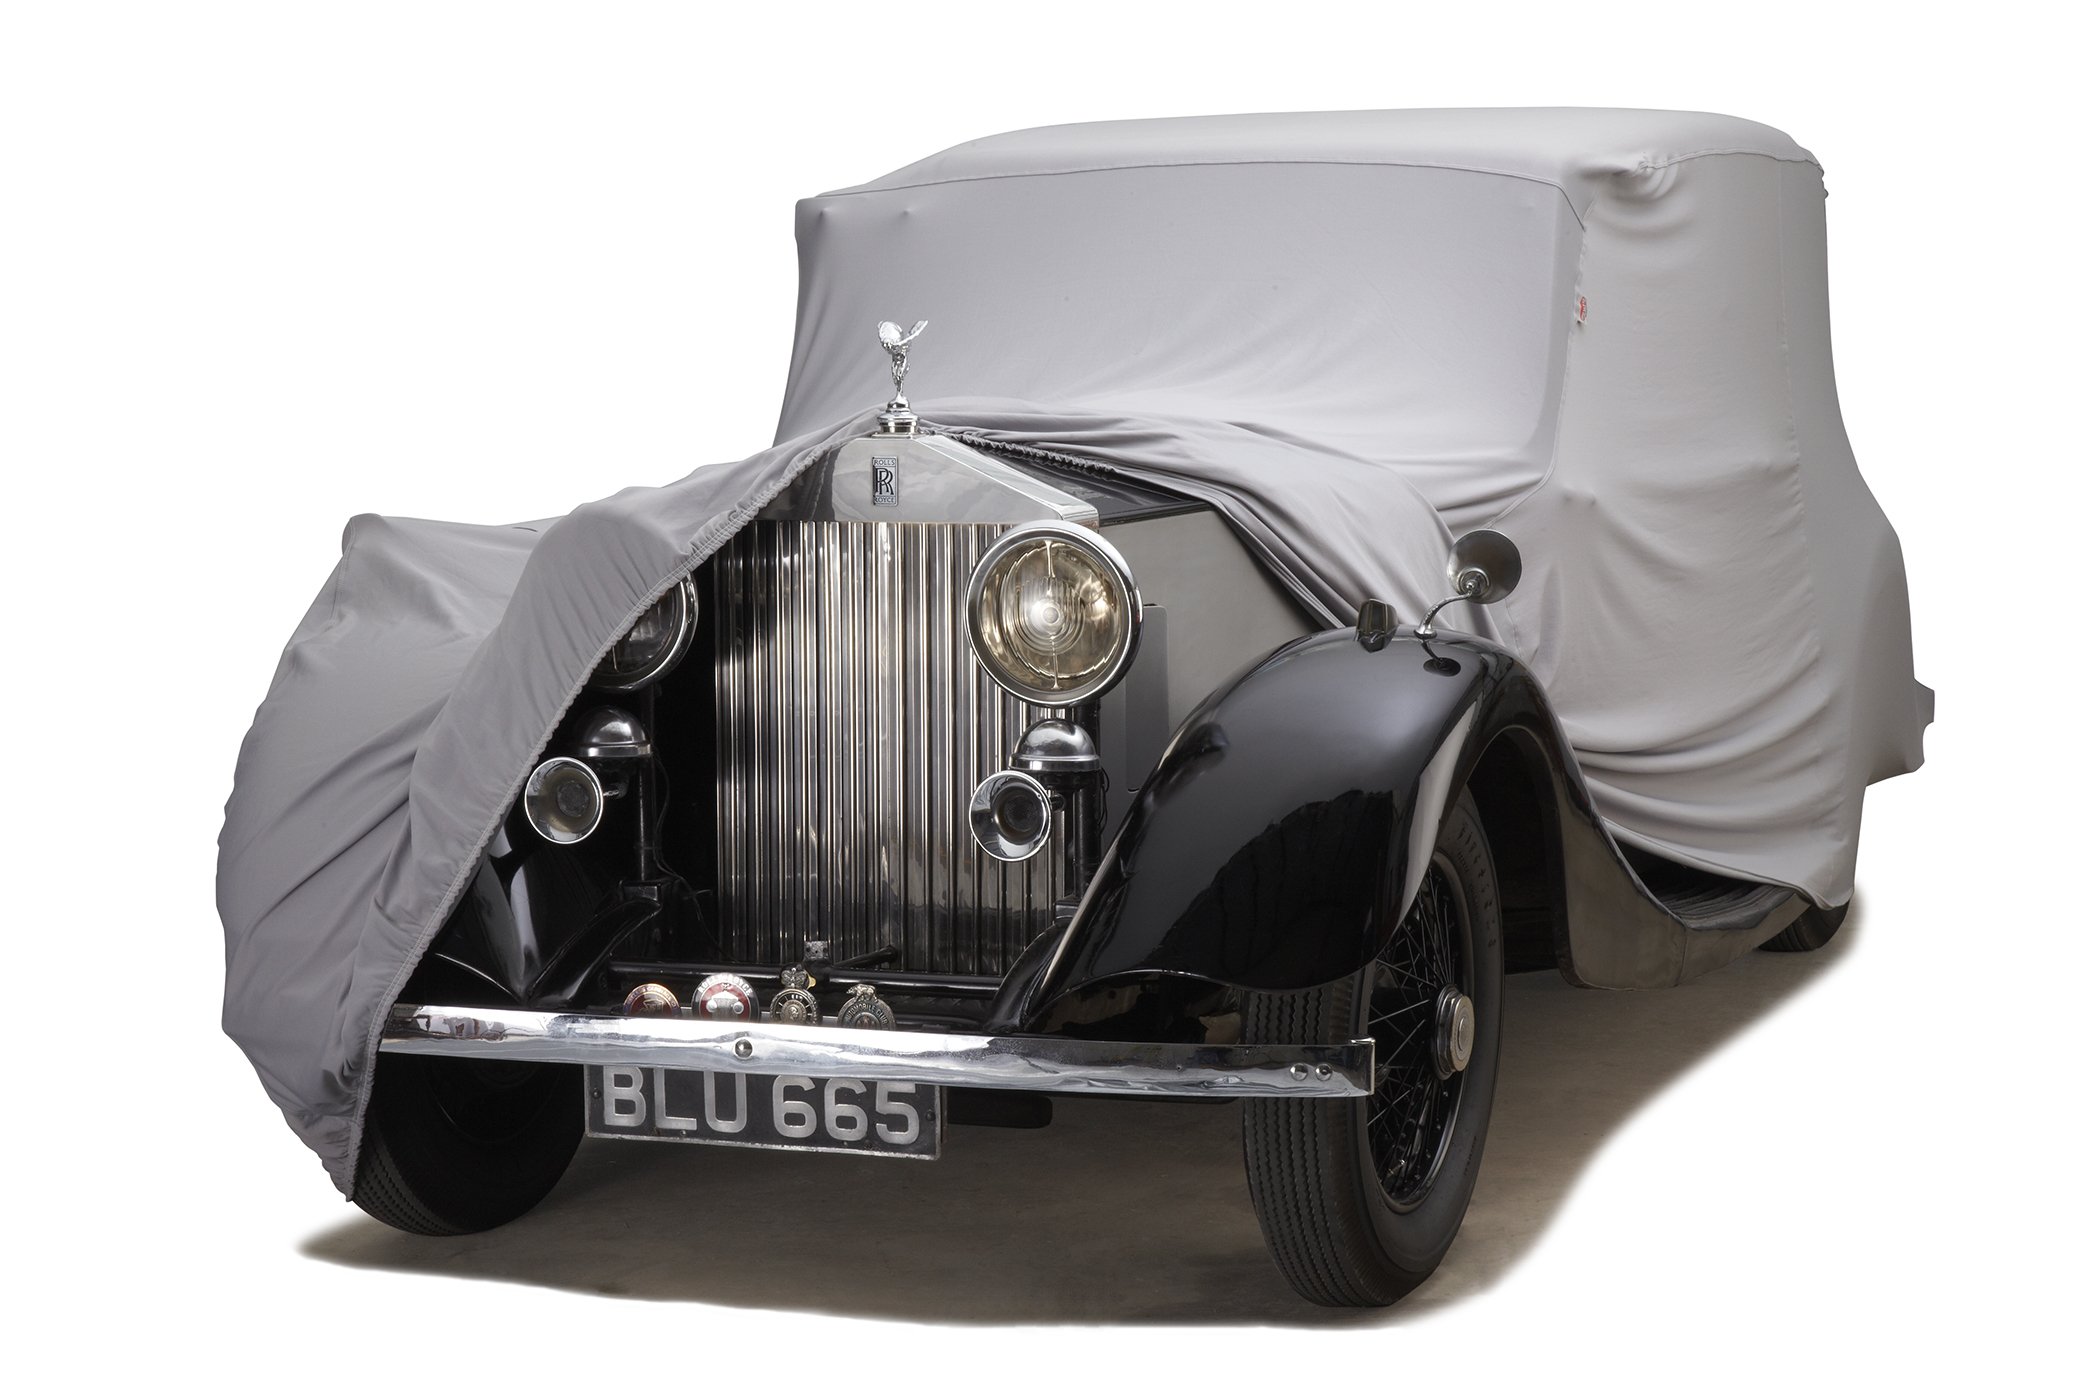 Form-Fit inomhus biltäcke Rolls-Royce uppdraget framtill